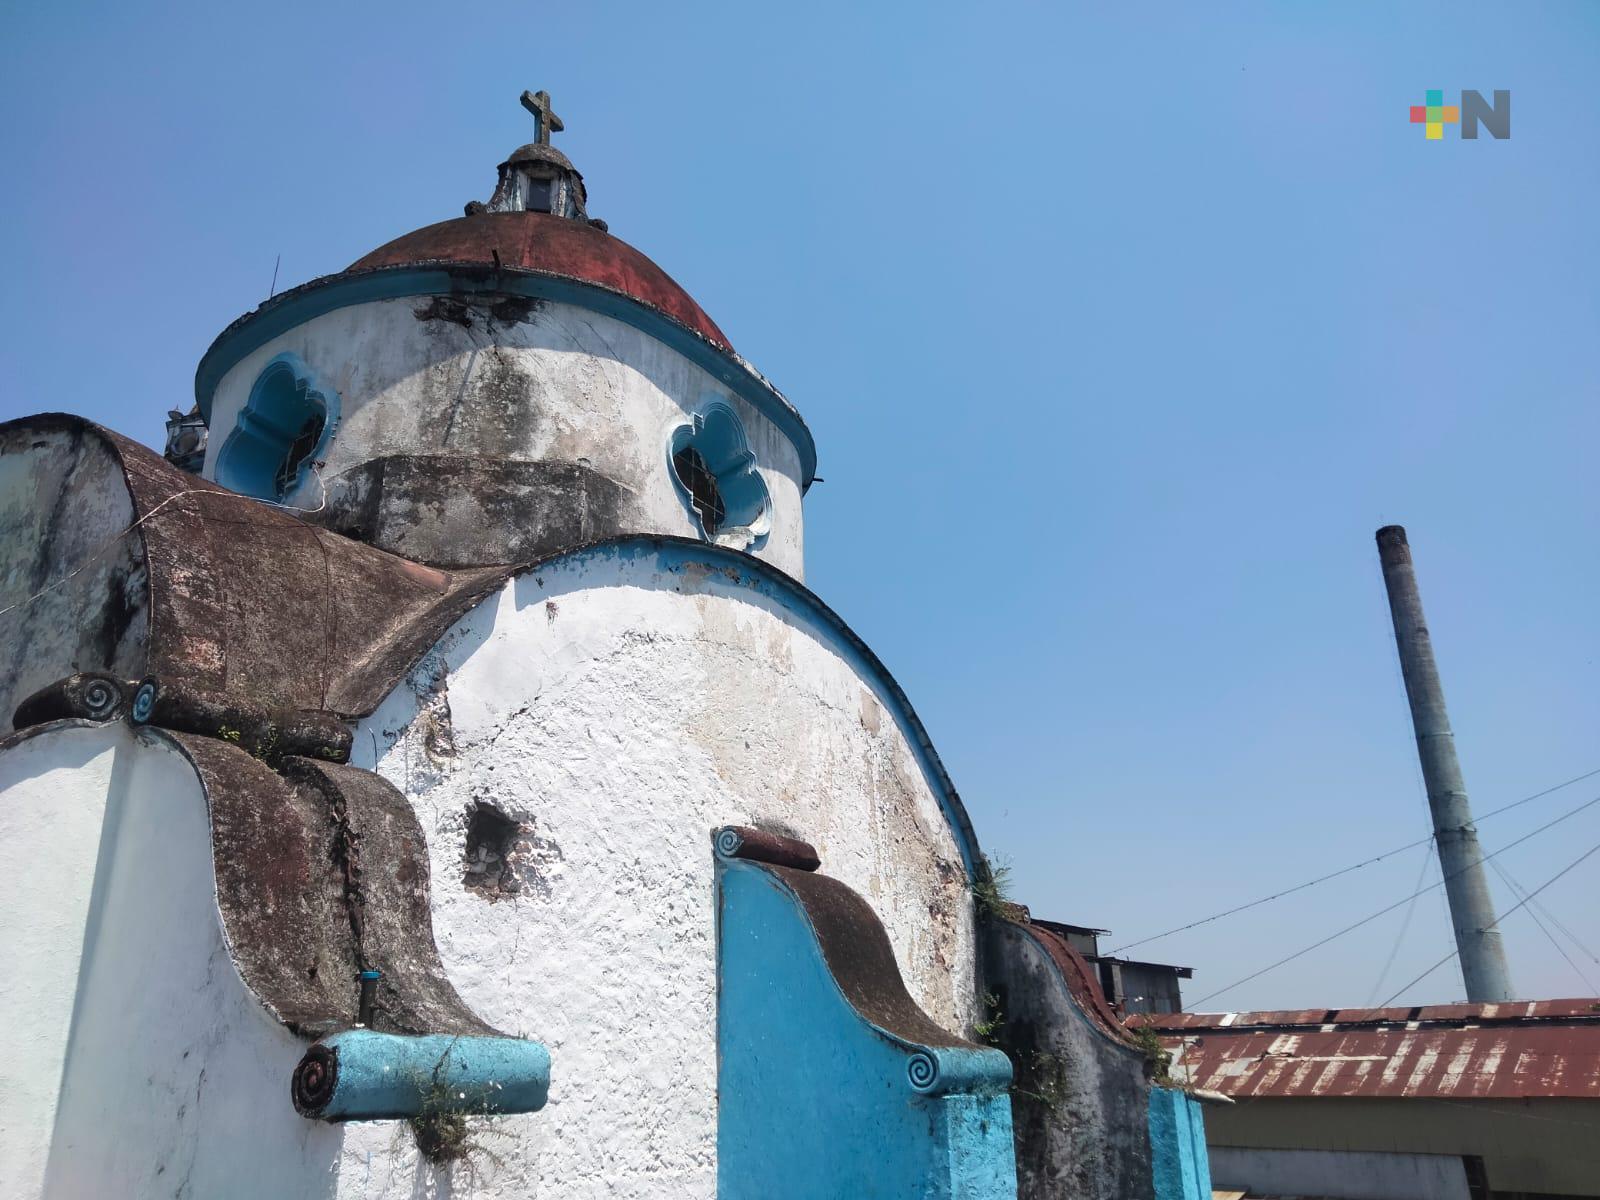 Localidad de La Concha guarda interesantes historias de la época de la conquista de México